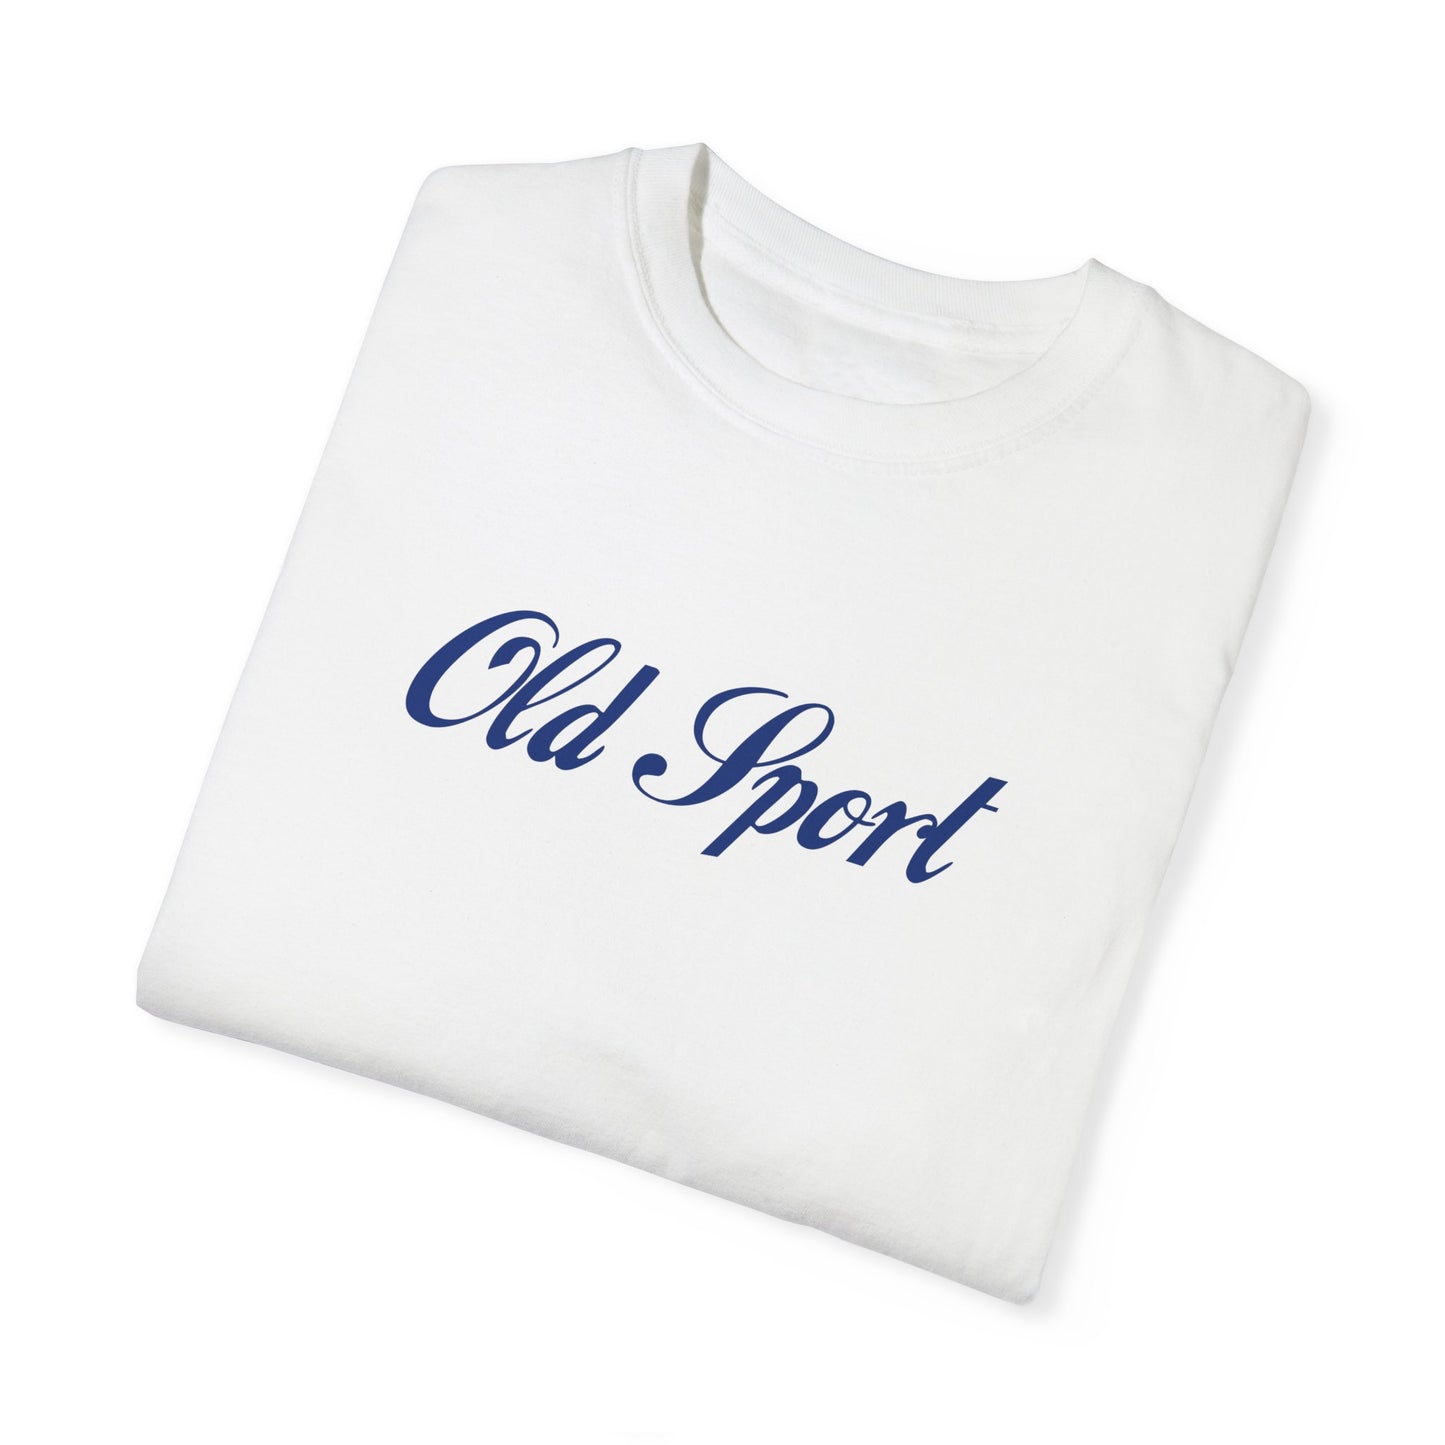 Old Sport Blue Text T-Shirt